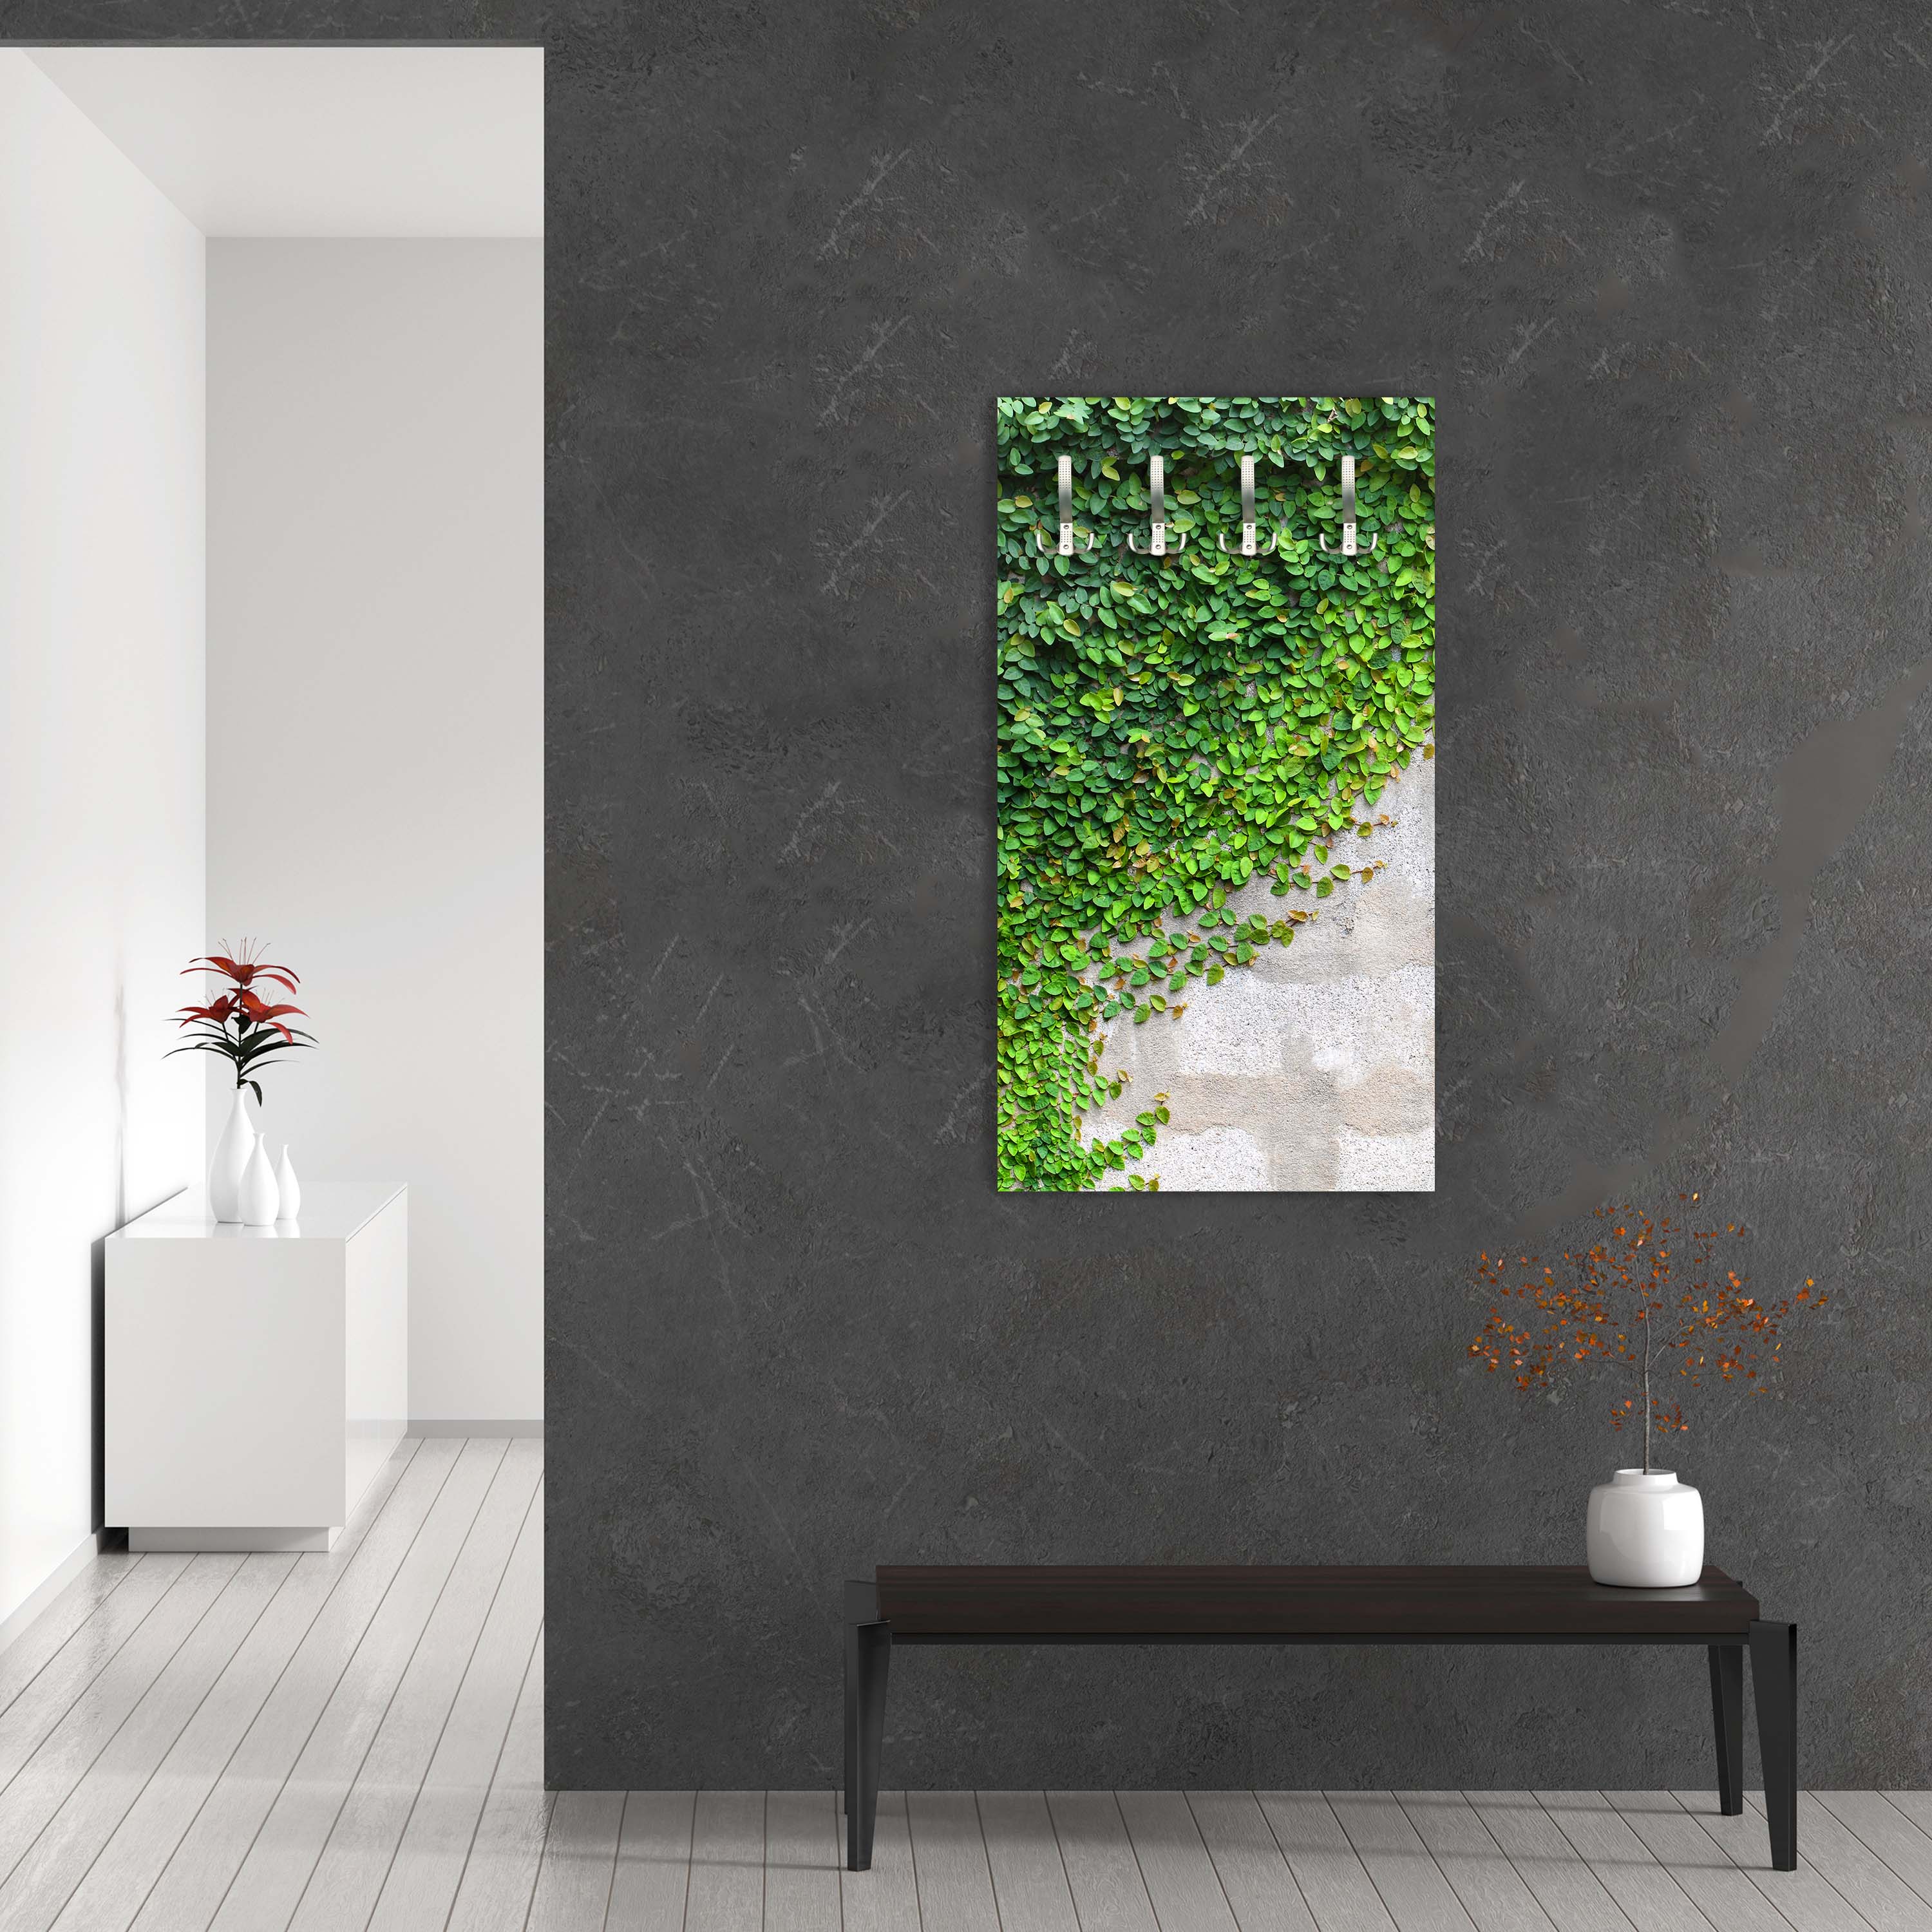 Garderobe Eine Kriechpflanze auf einer Mauer M0937 entdecken - Bild 5